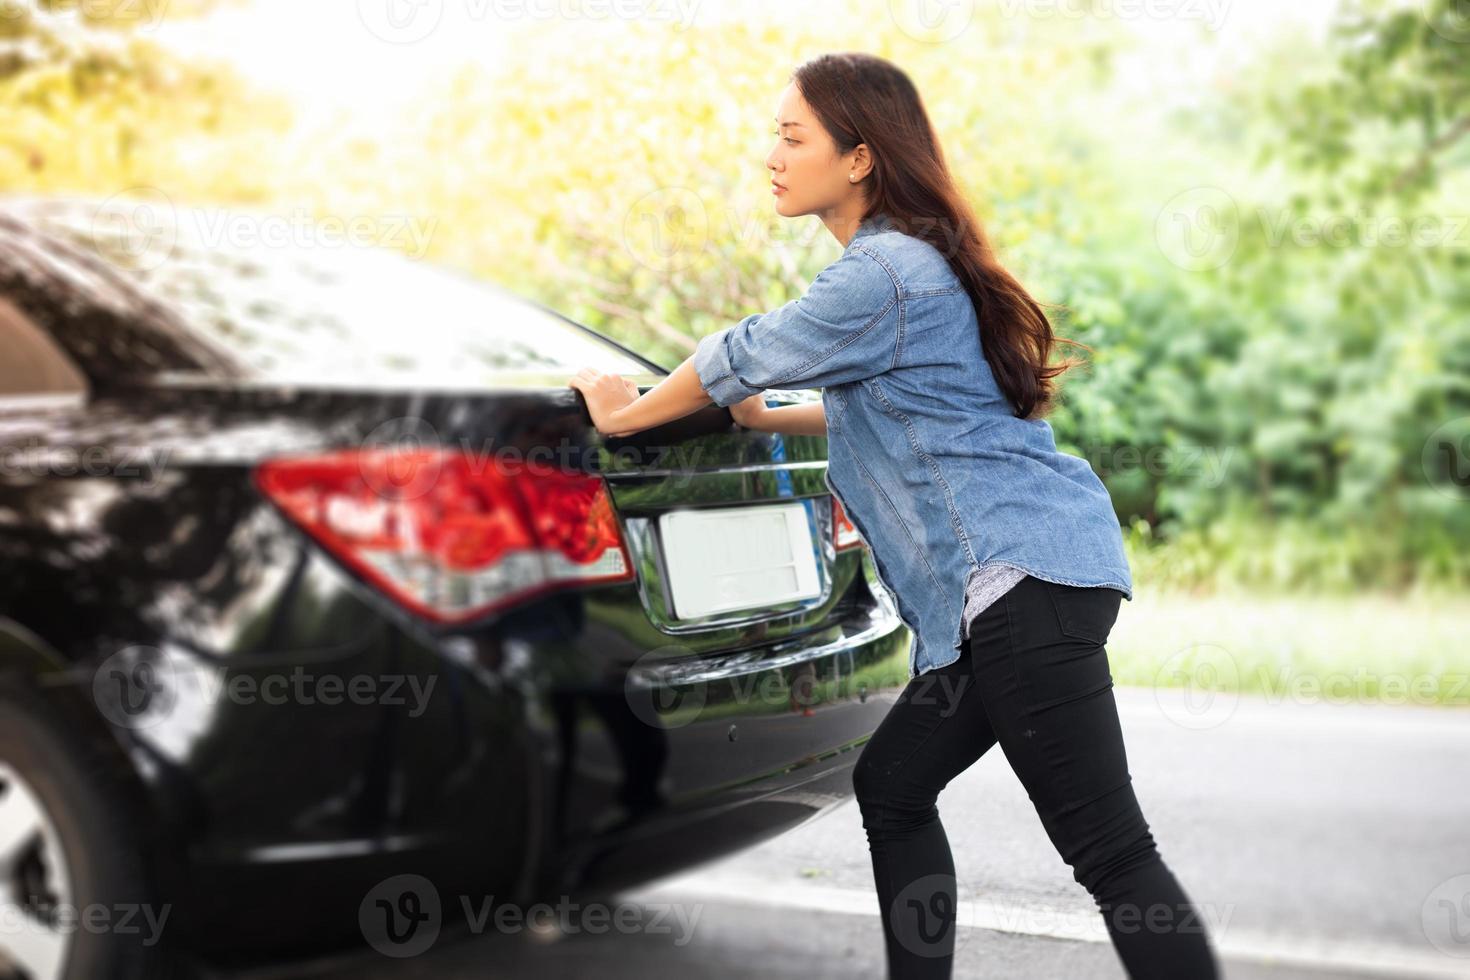 femmes stressées après une panne de voiture avec triangle rouge d'une voiture sur la route photo